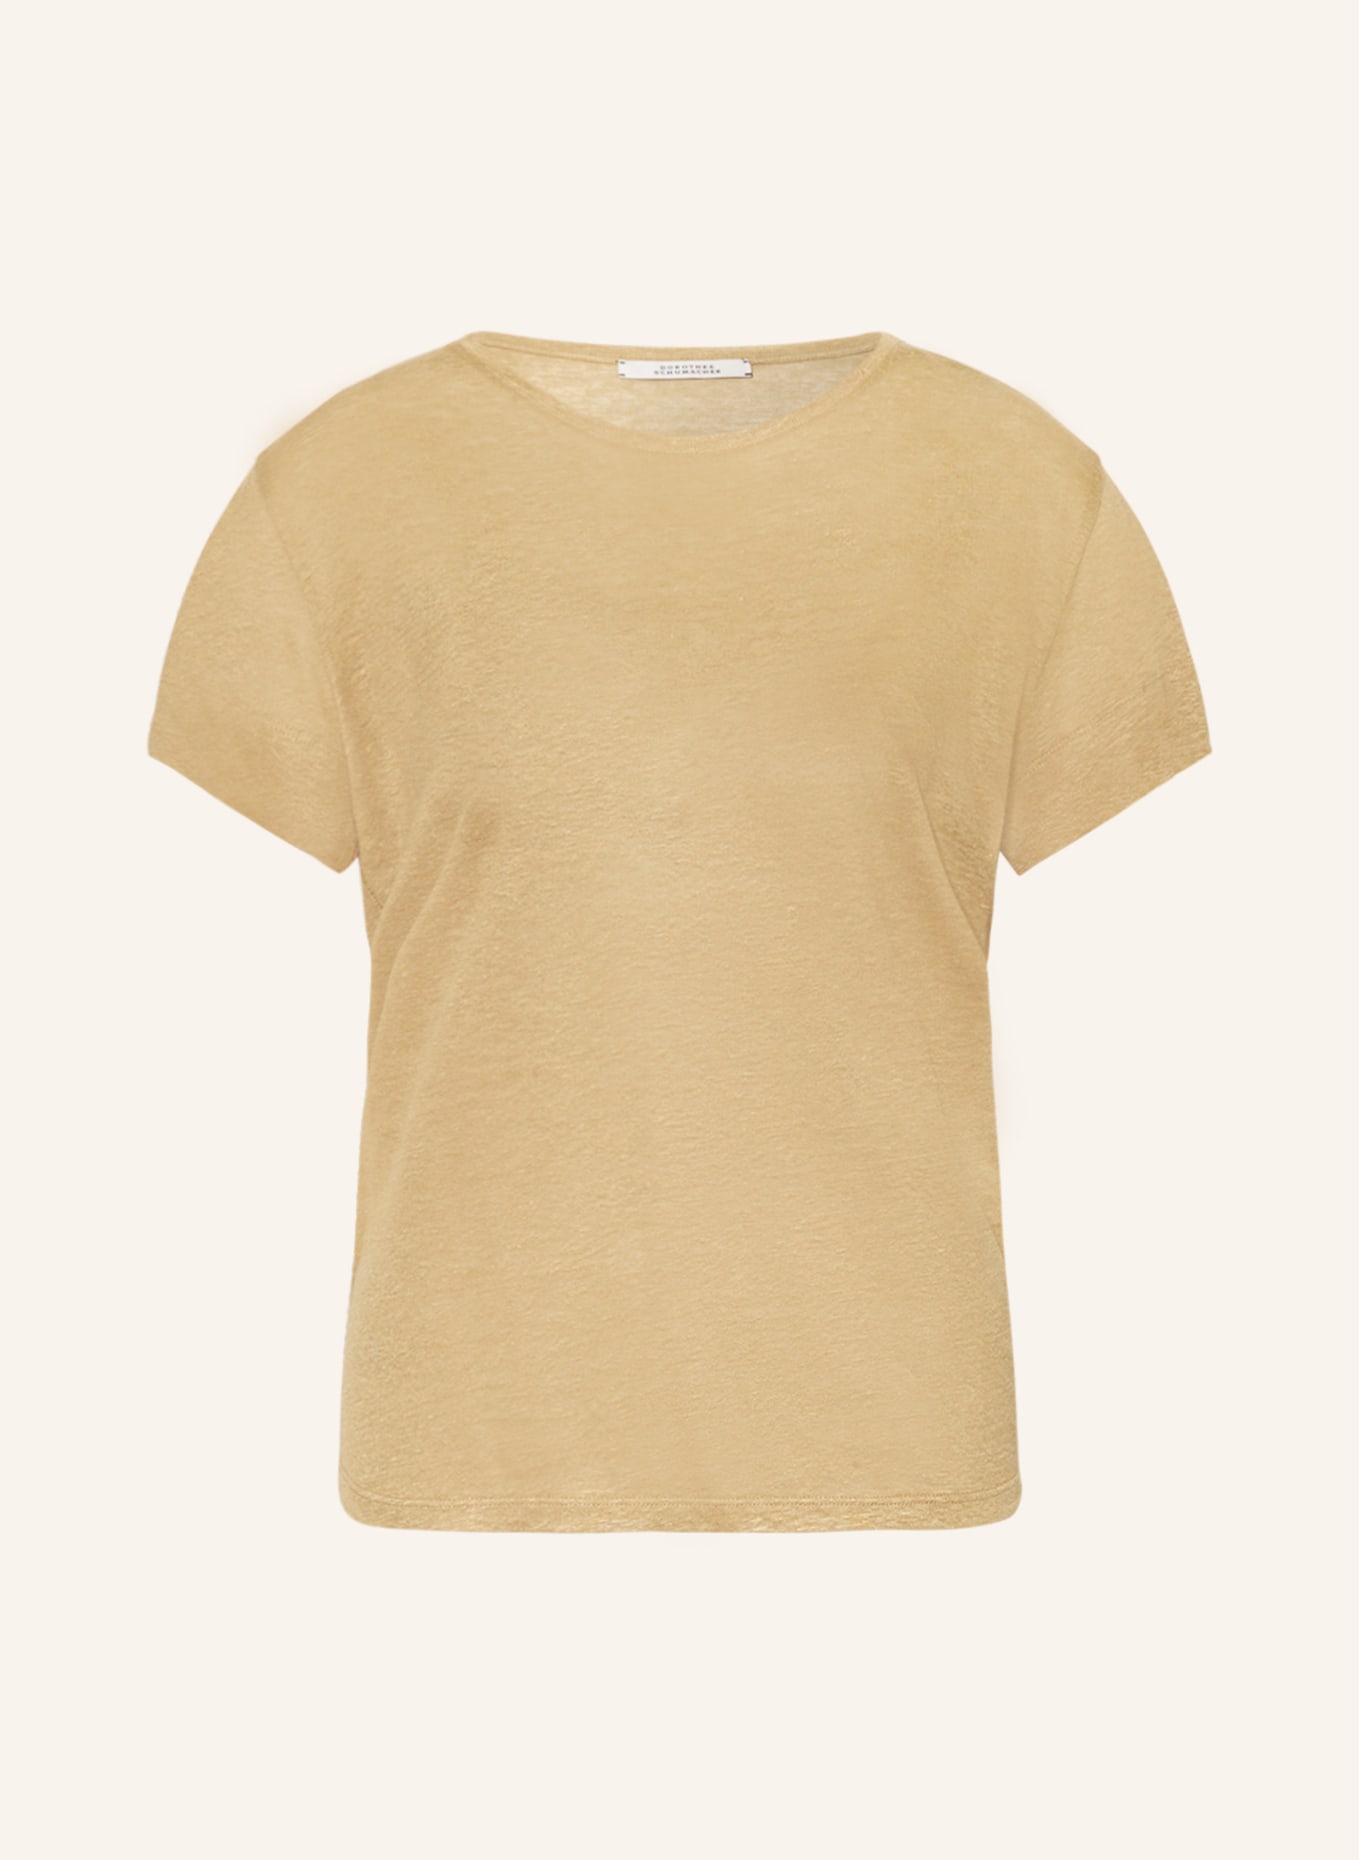 DOROTHEE SCHUMACHER T-Shirt, Farbe: BEIGE (Bild 1)